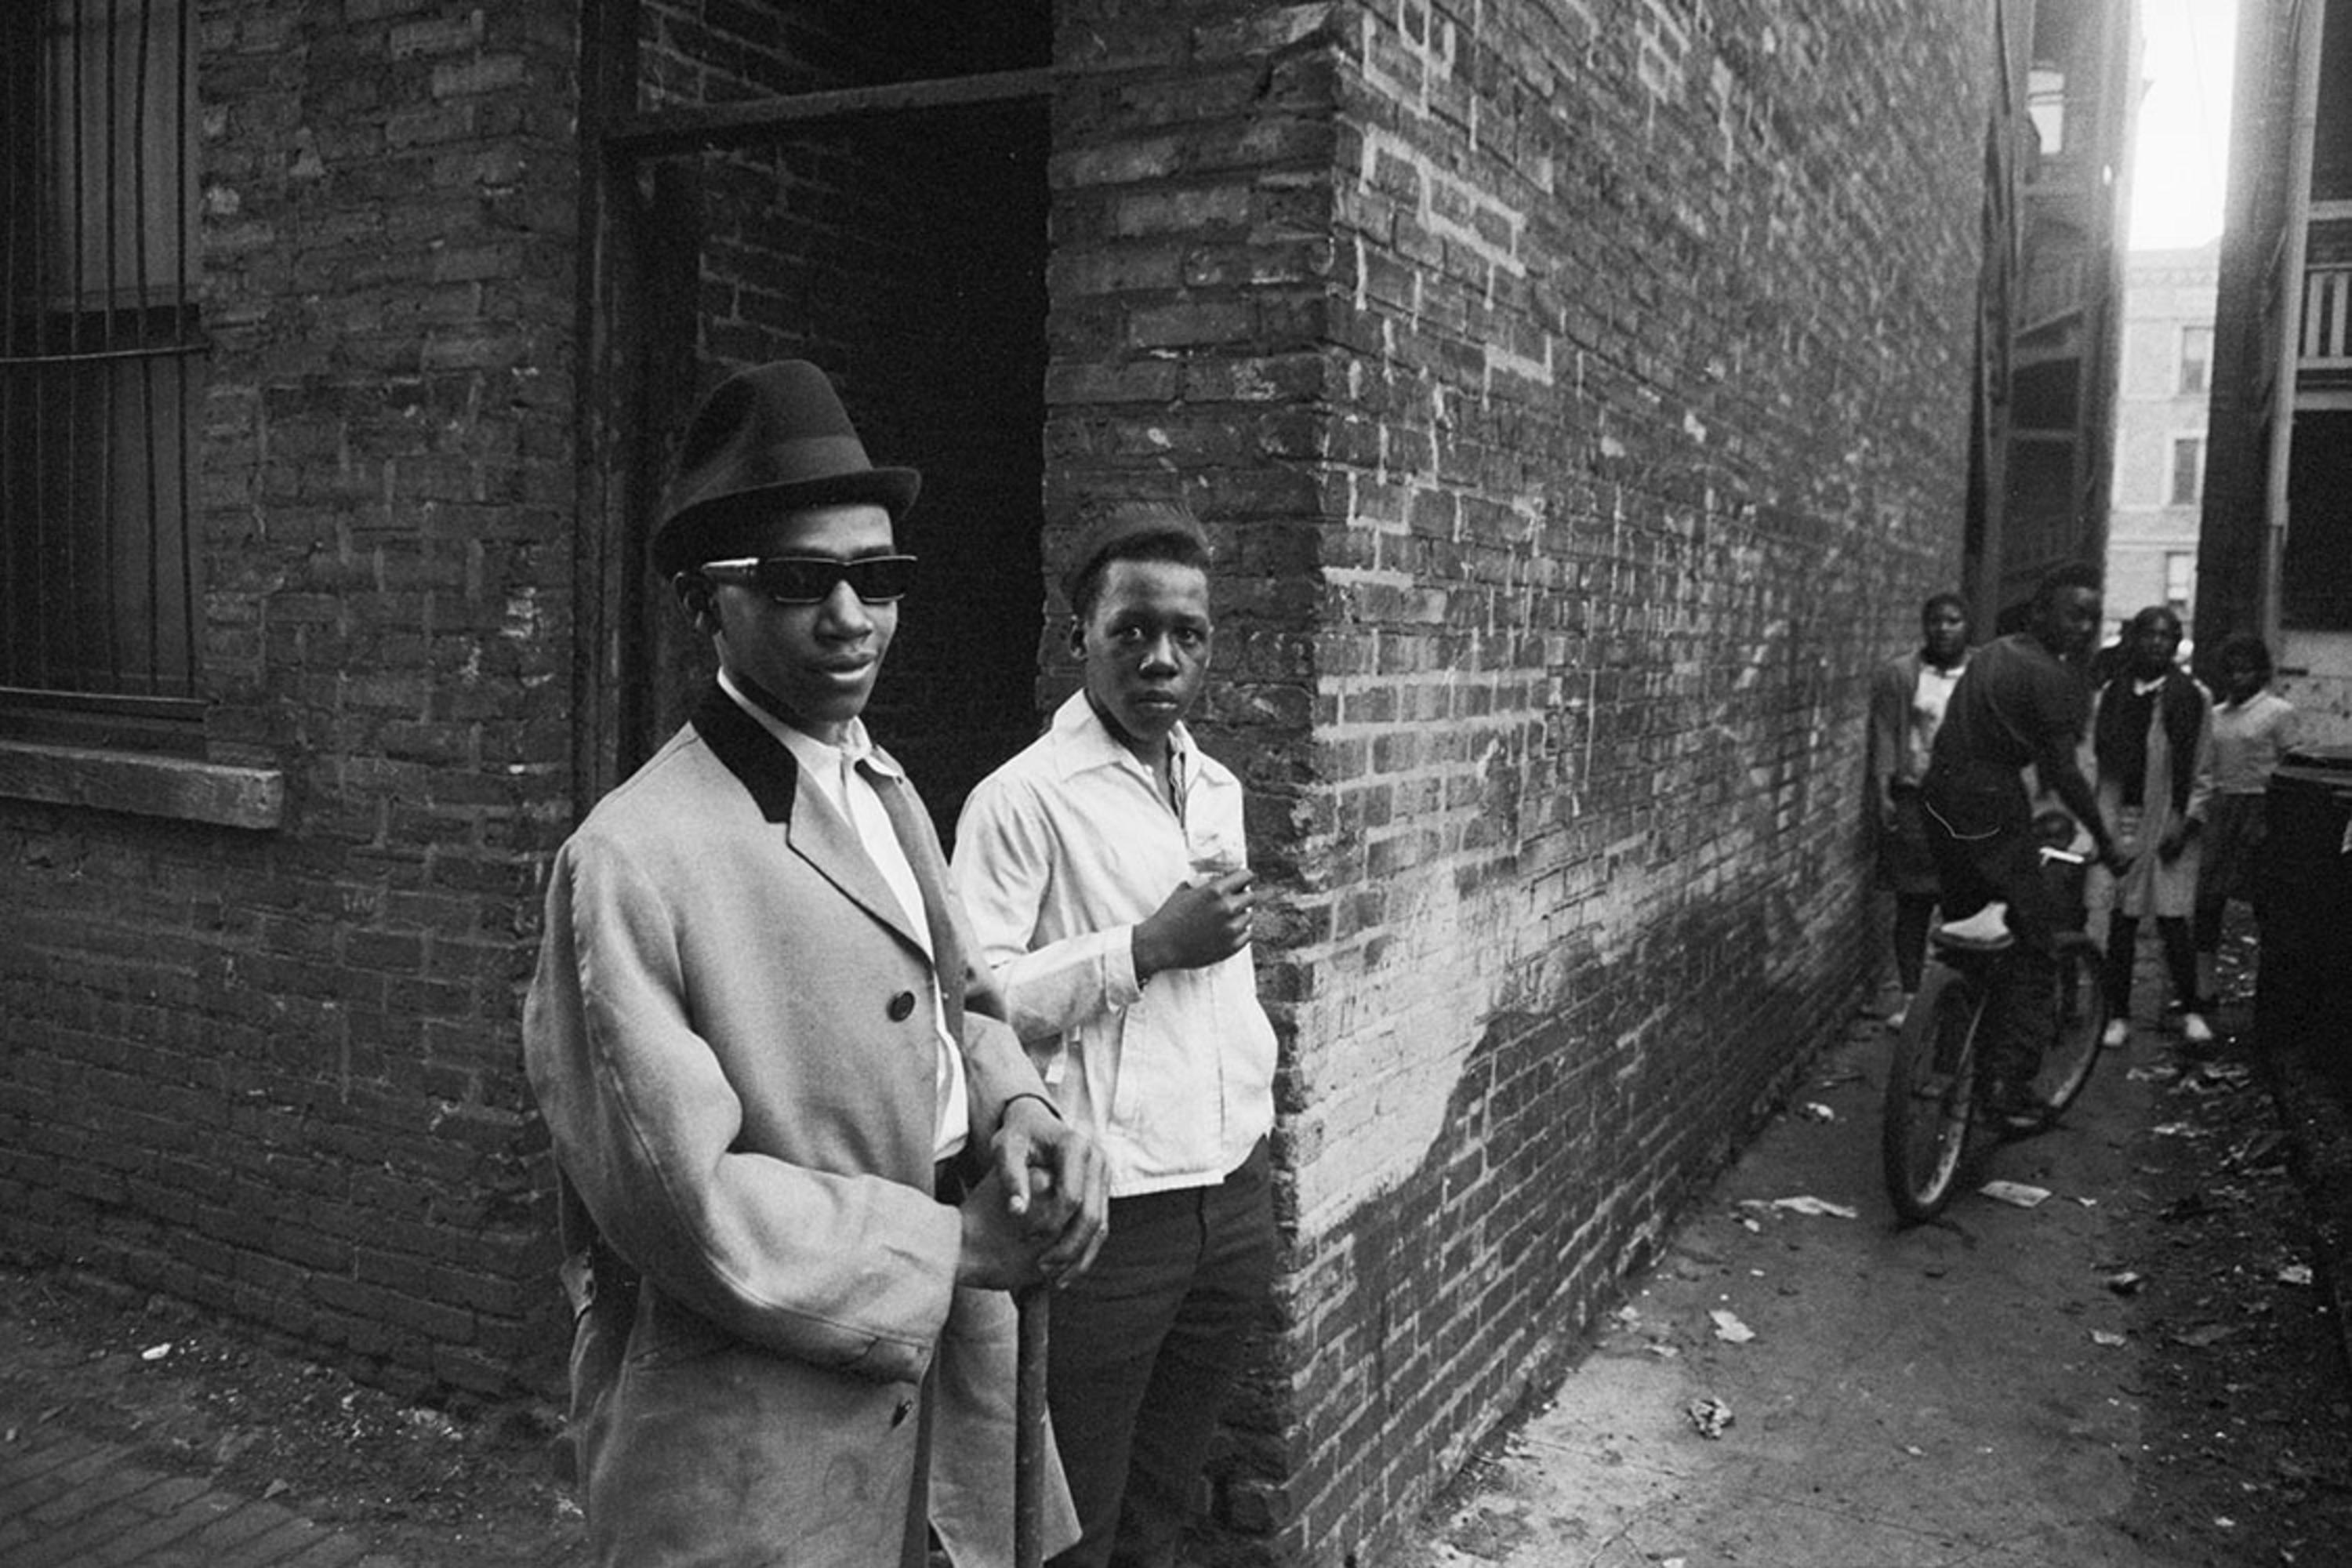 Nachlassgestempelt, Gelatineabzug Silber

Zwei junge Mitglieder von The Almighty Vice Lord Nation wurden auf den Straßen von Chicago fotografiert. Am besten bekannt als "Vice Lords" waren sie eine der ältesten und zweitgrößten Straßengangs in der